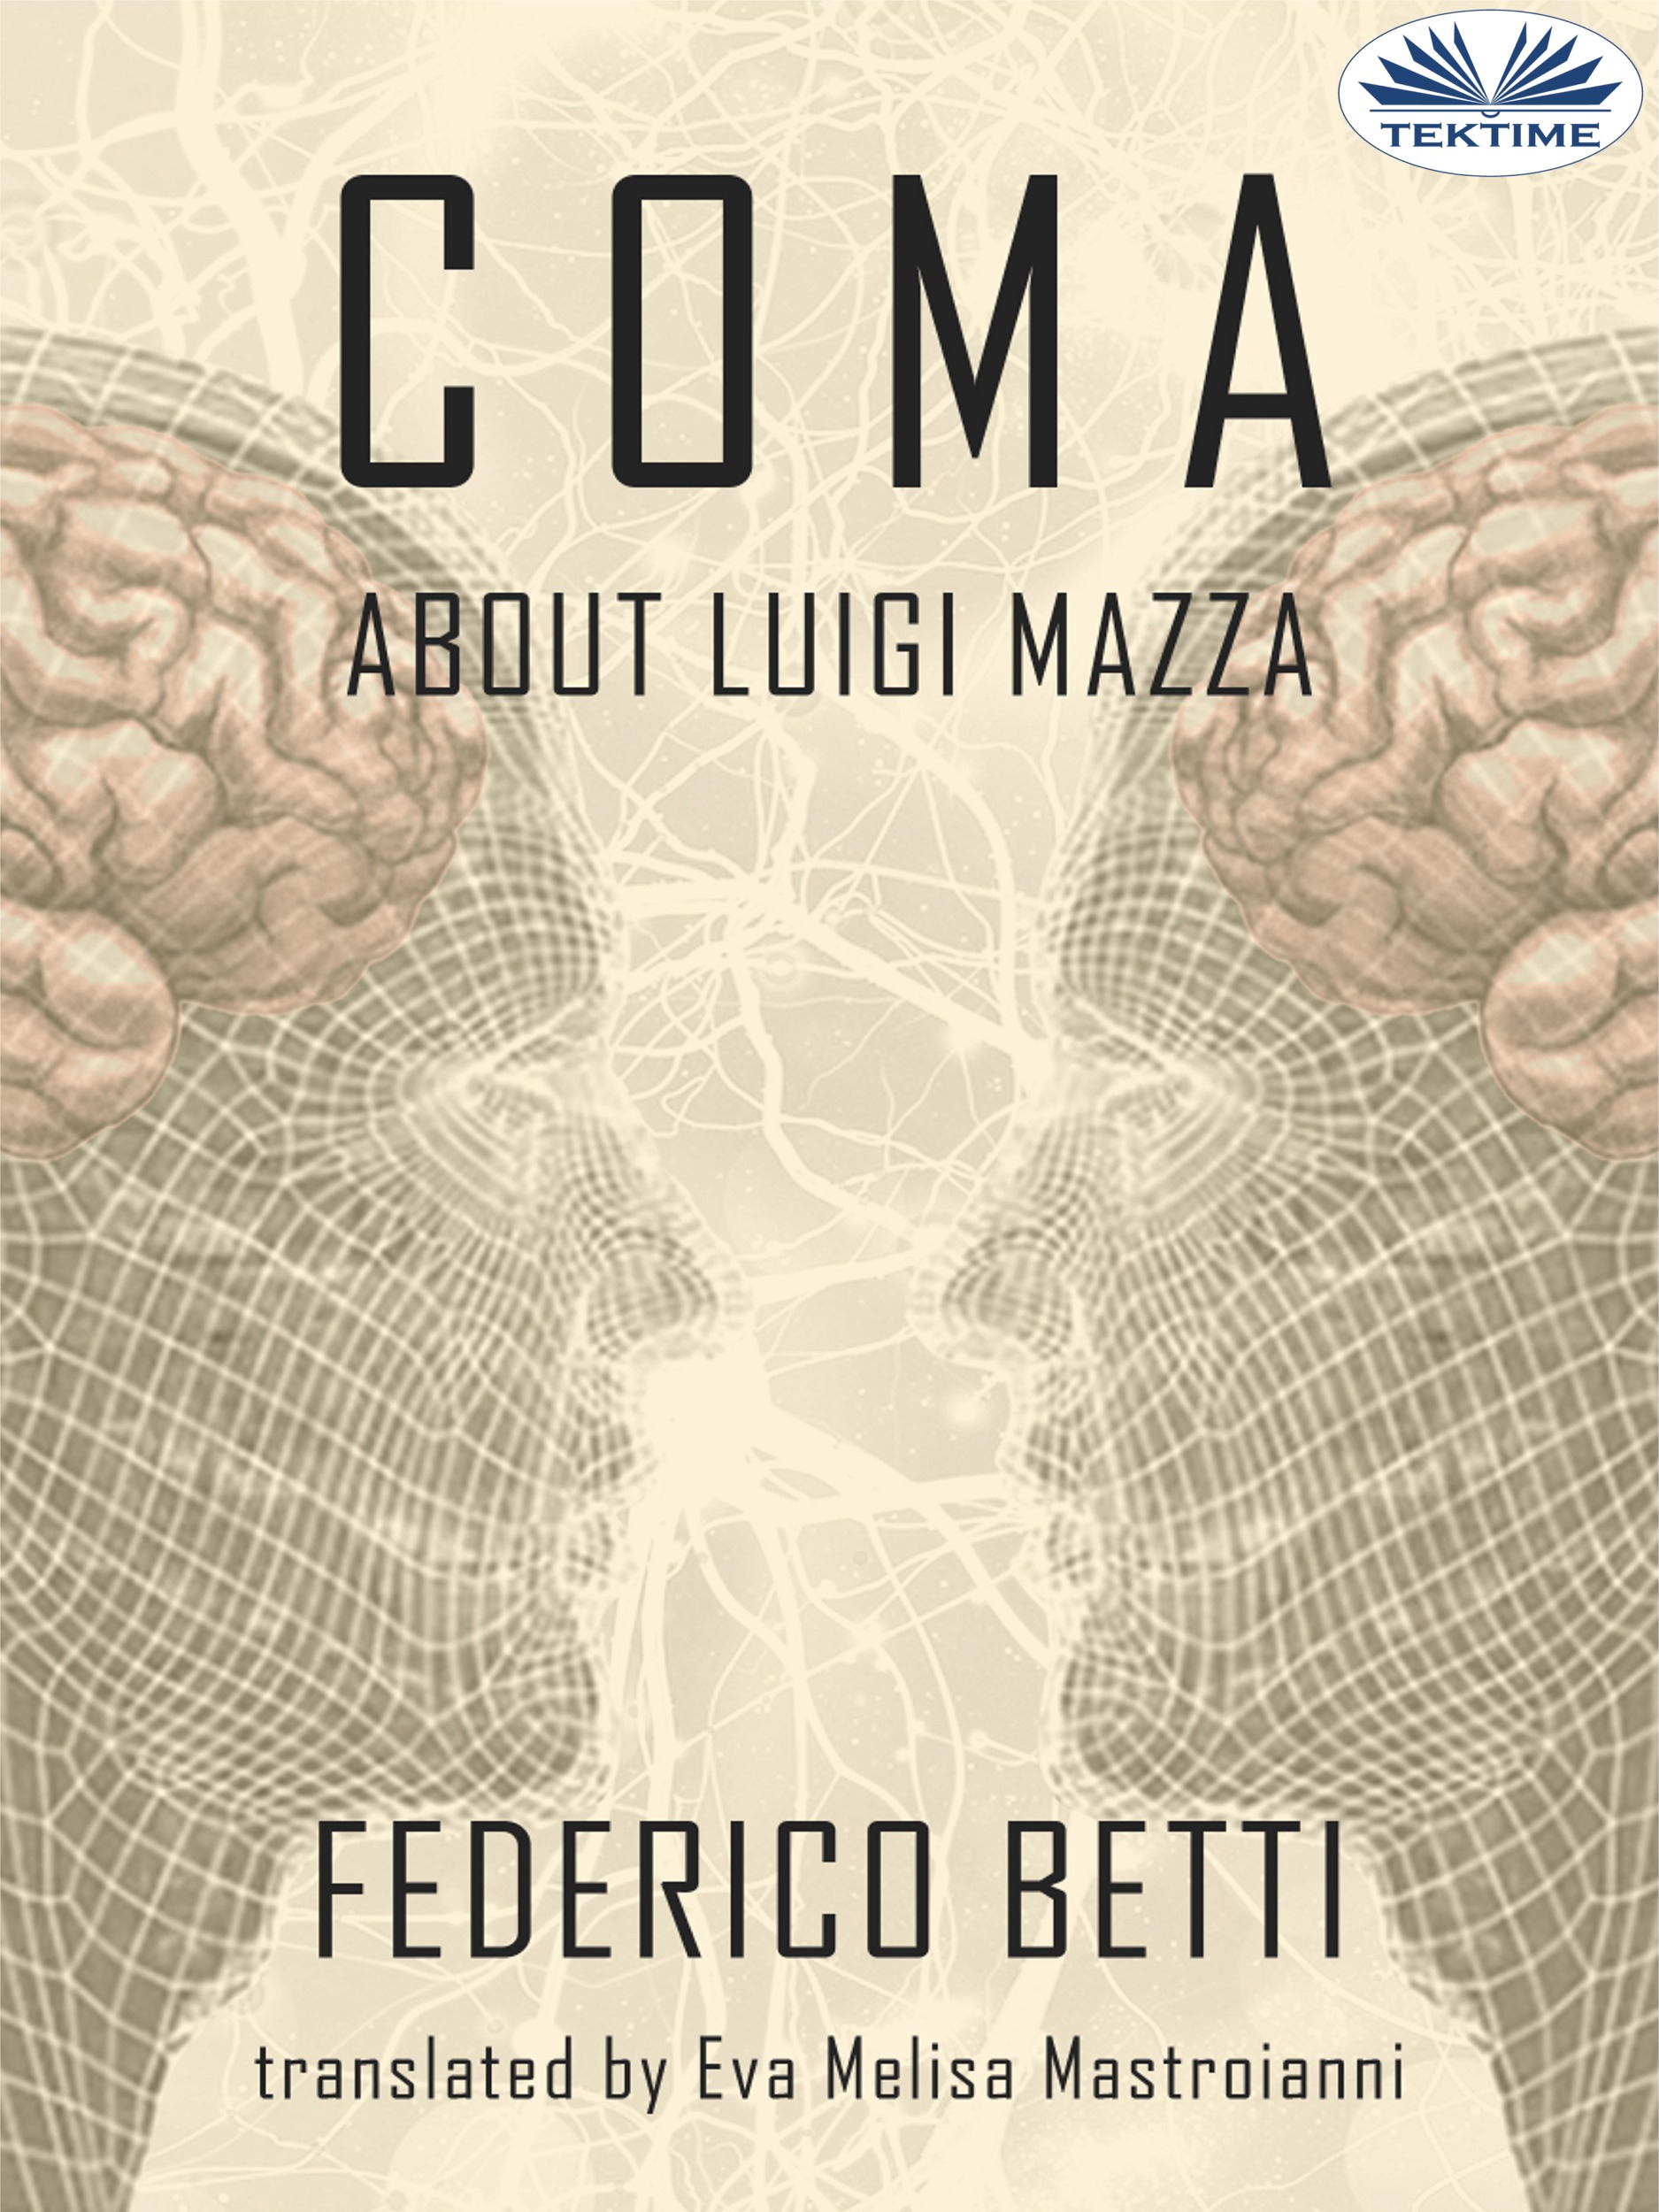 Книга Coma из серии , созданная Federico Betti, может относится к жанру Триллеры, Зарубежные детективы, Современная зарубежная литература, Зарубежная психология. Стоимость электронной книги Coma с идентификатором 48772972 составляет 226.77 руб.